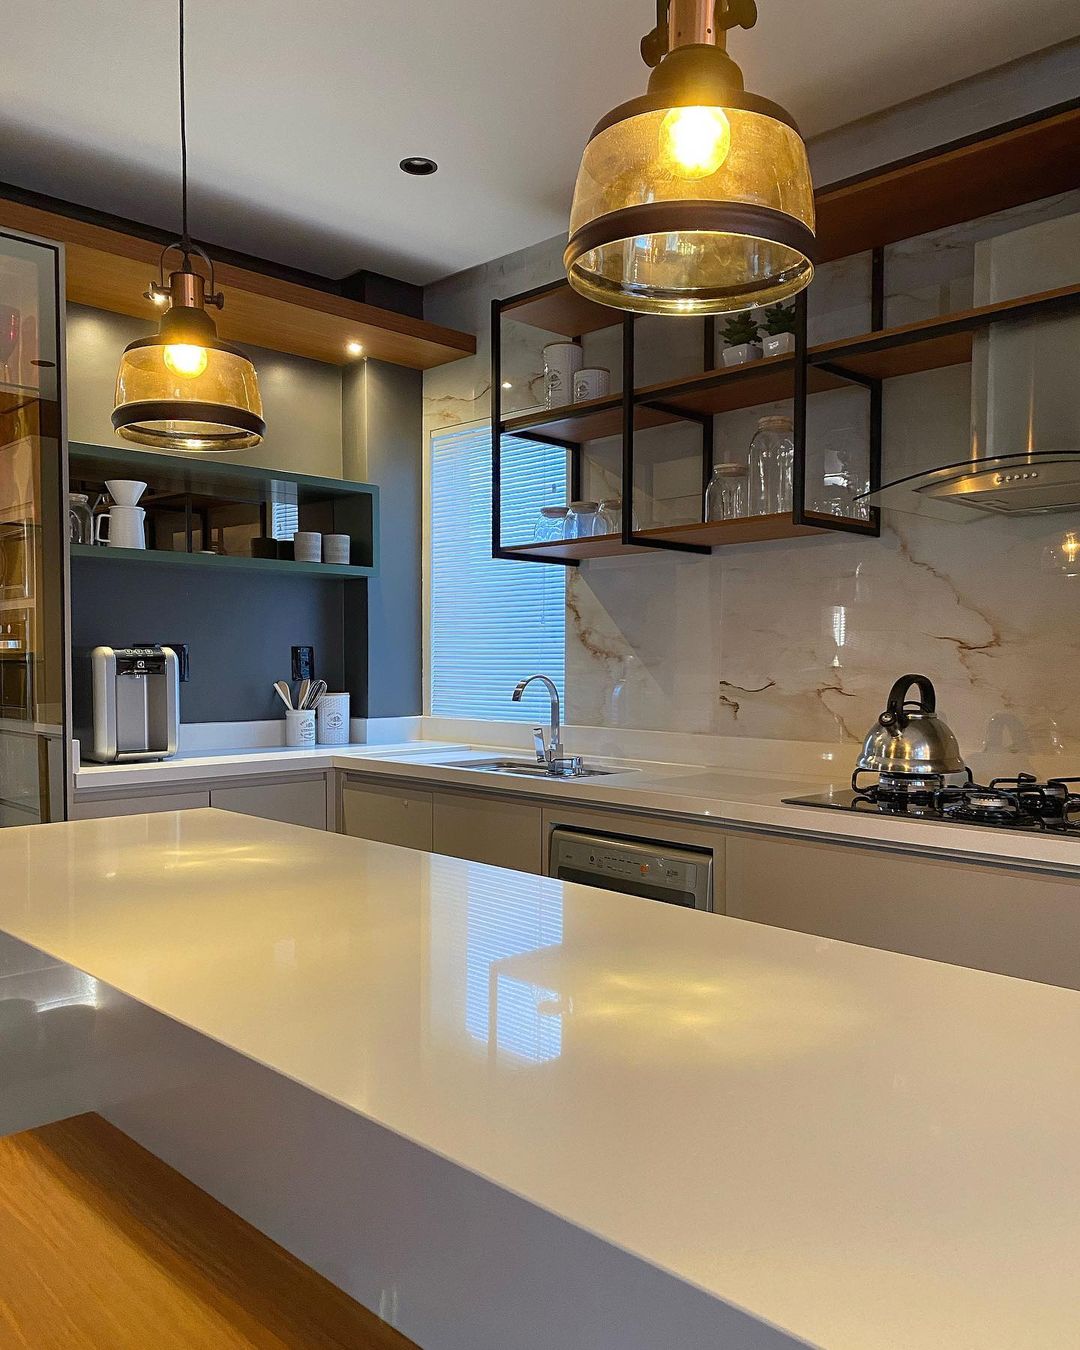 Foto de cozinha moderna 34 - 42